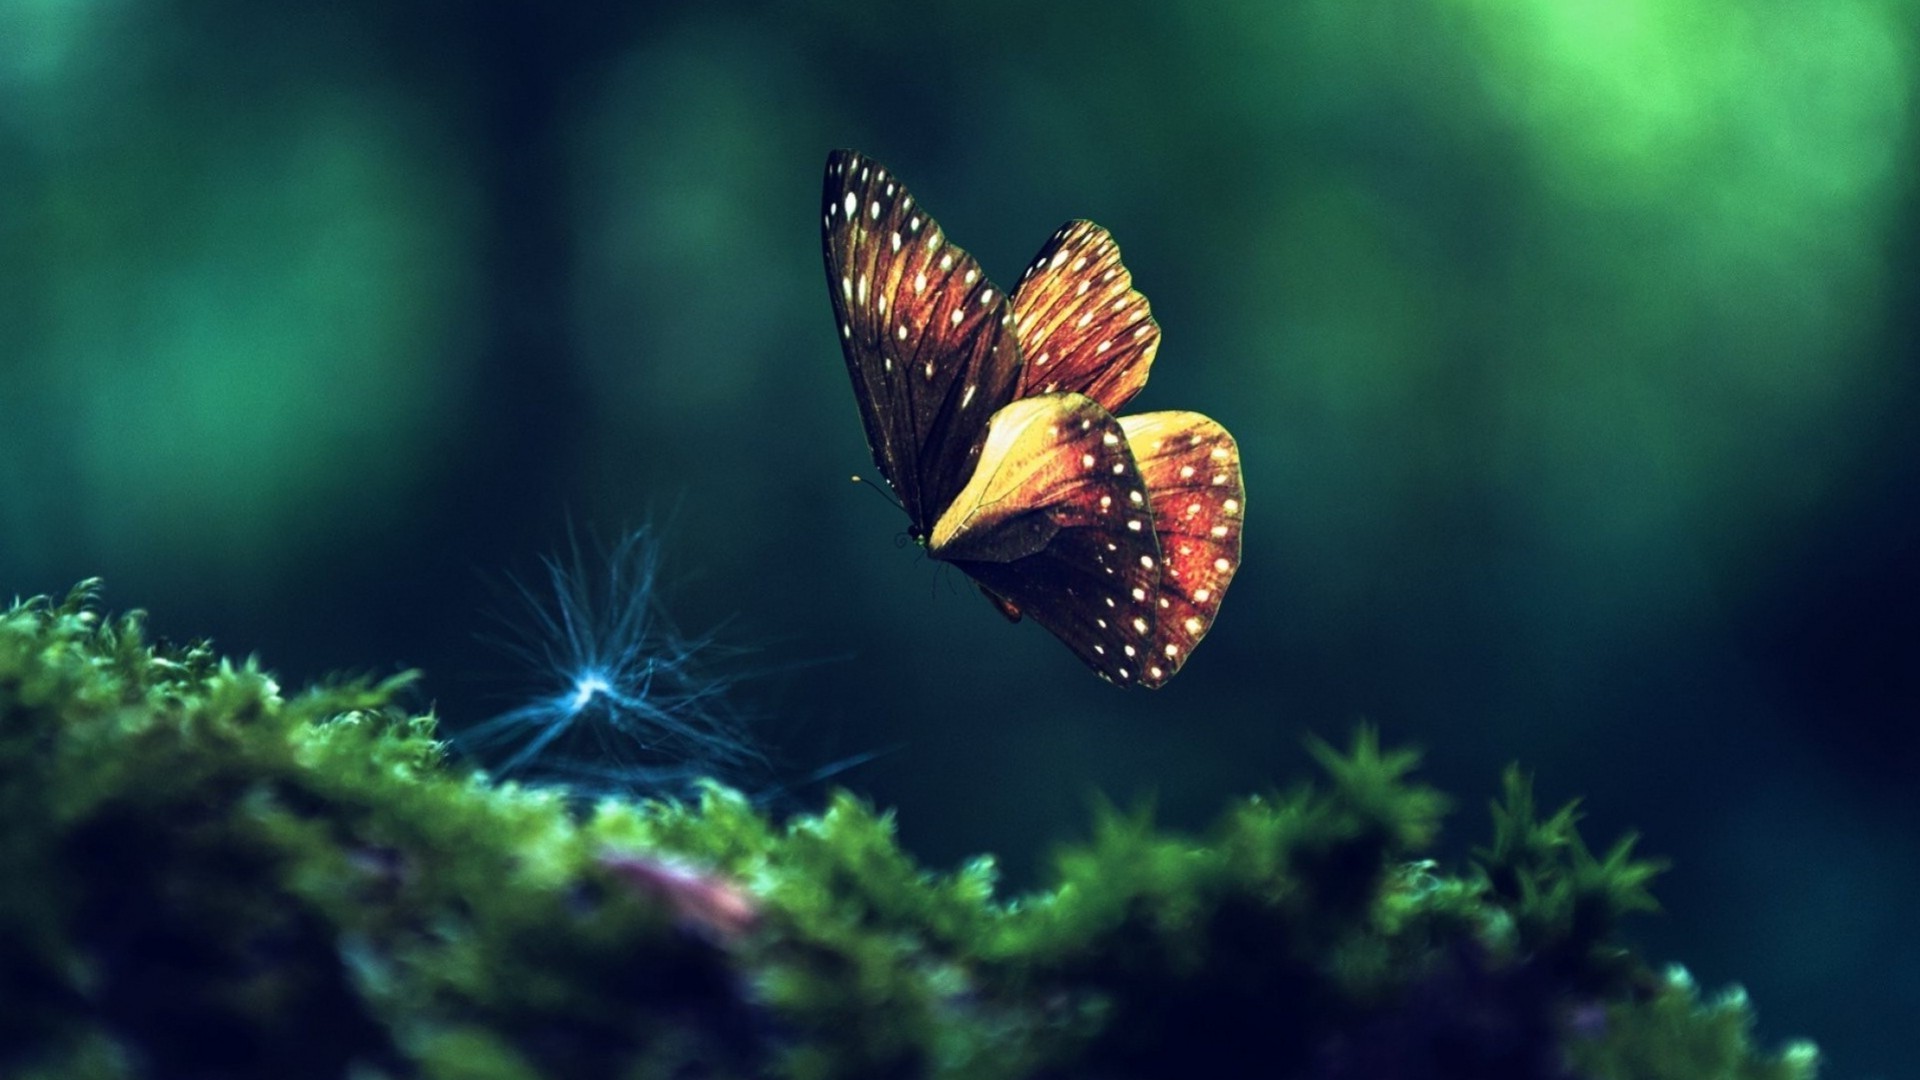 naturaleza foto fondos de pantalla,naturaleza,mariposa,fotografía macro,verde,insecto